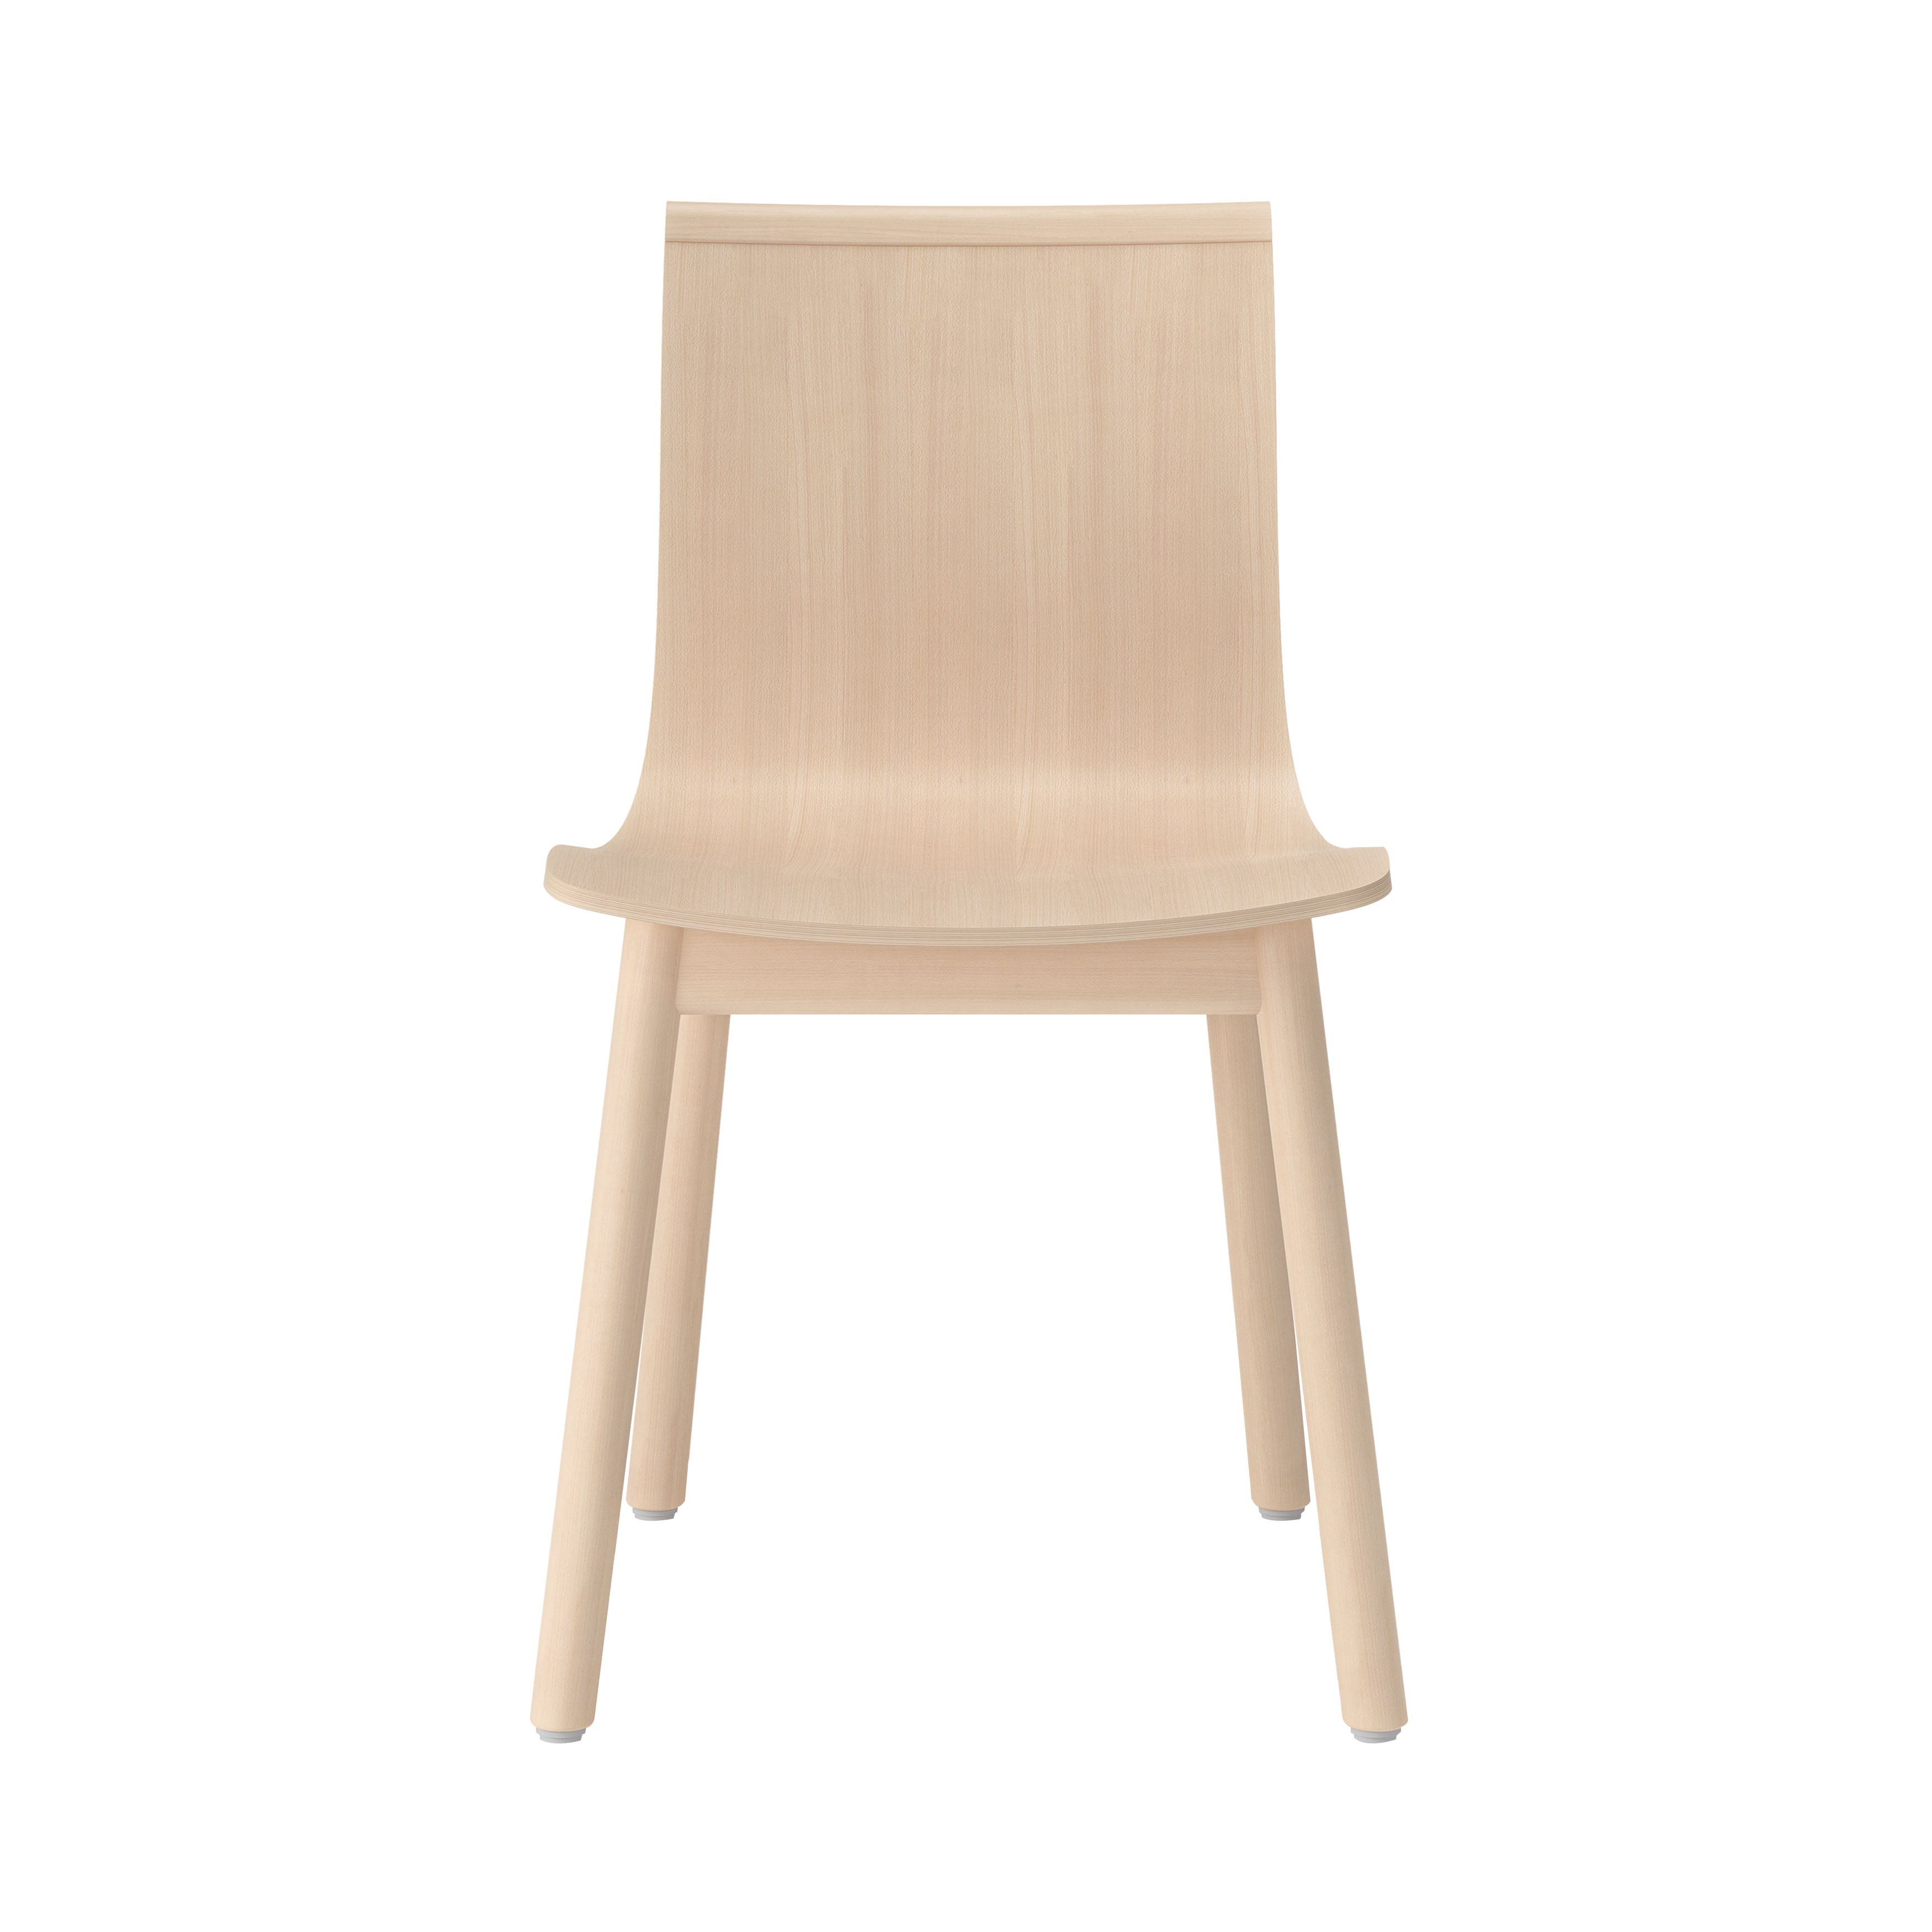 Serif Chair: Wooden Base + Natural Beech